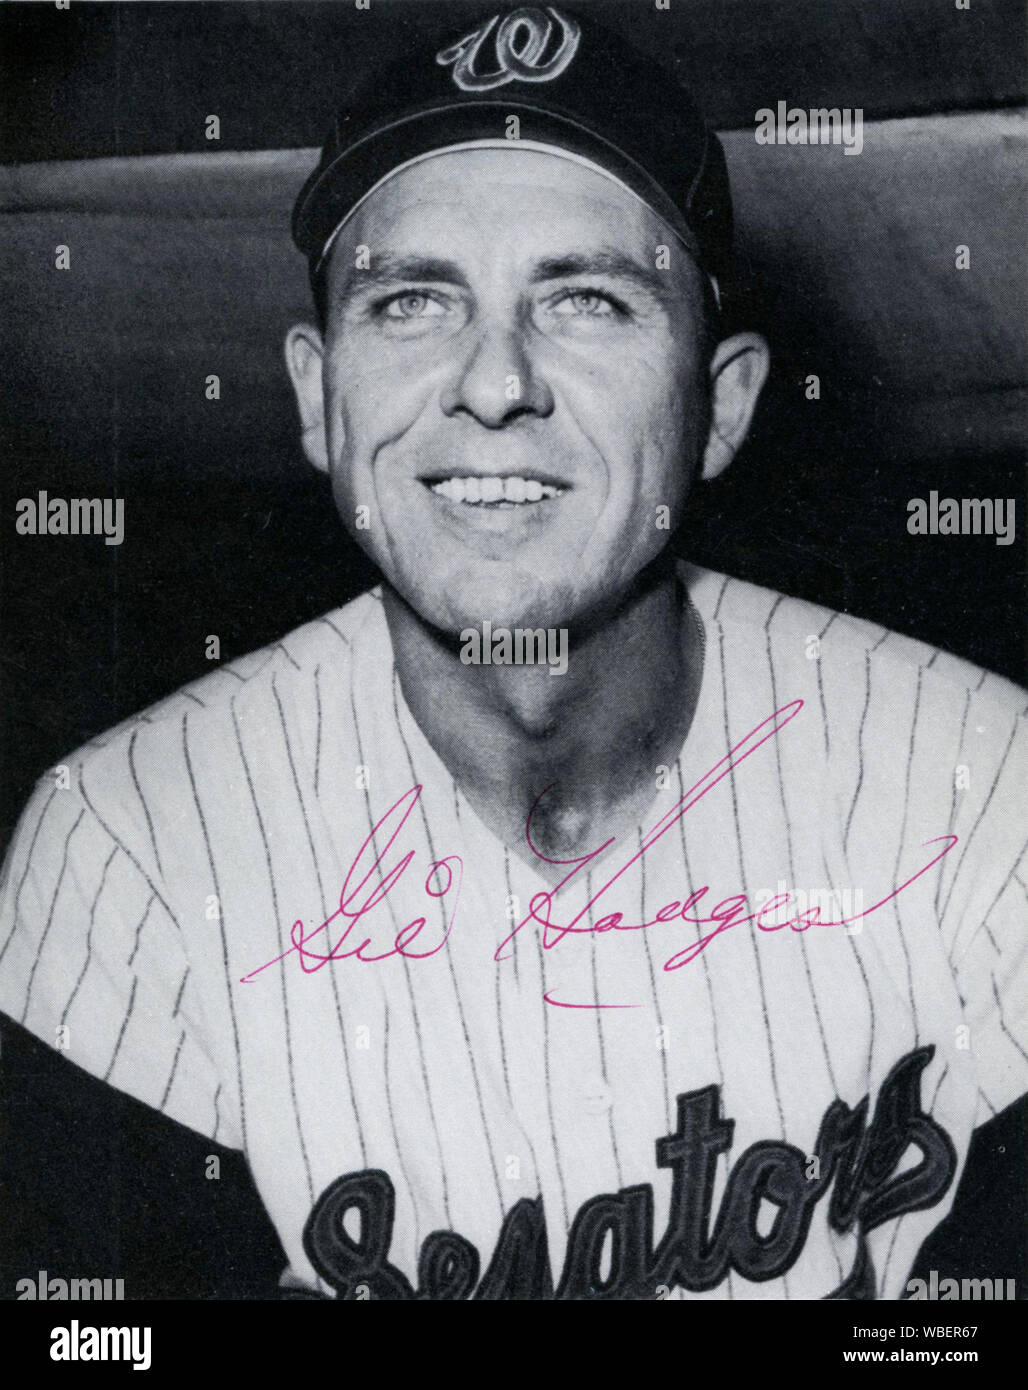 Firmato foto in bianco e nero di star player Gil Hodges dei Dodgers che divenne il manager dei Senatori di Washington nel 1963. Foto Stock